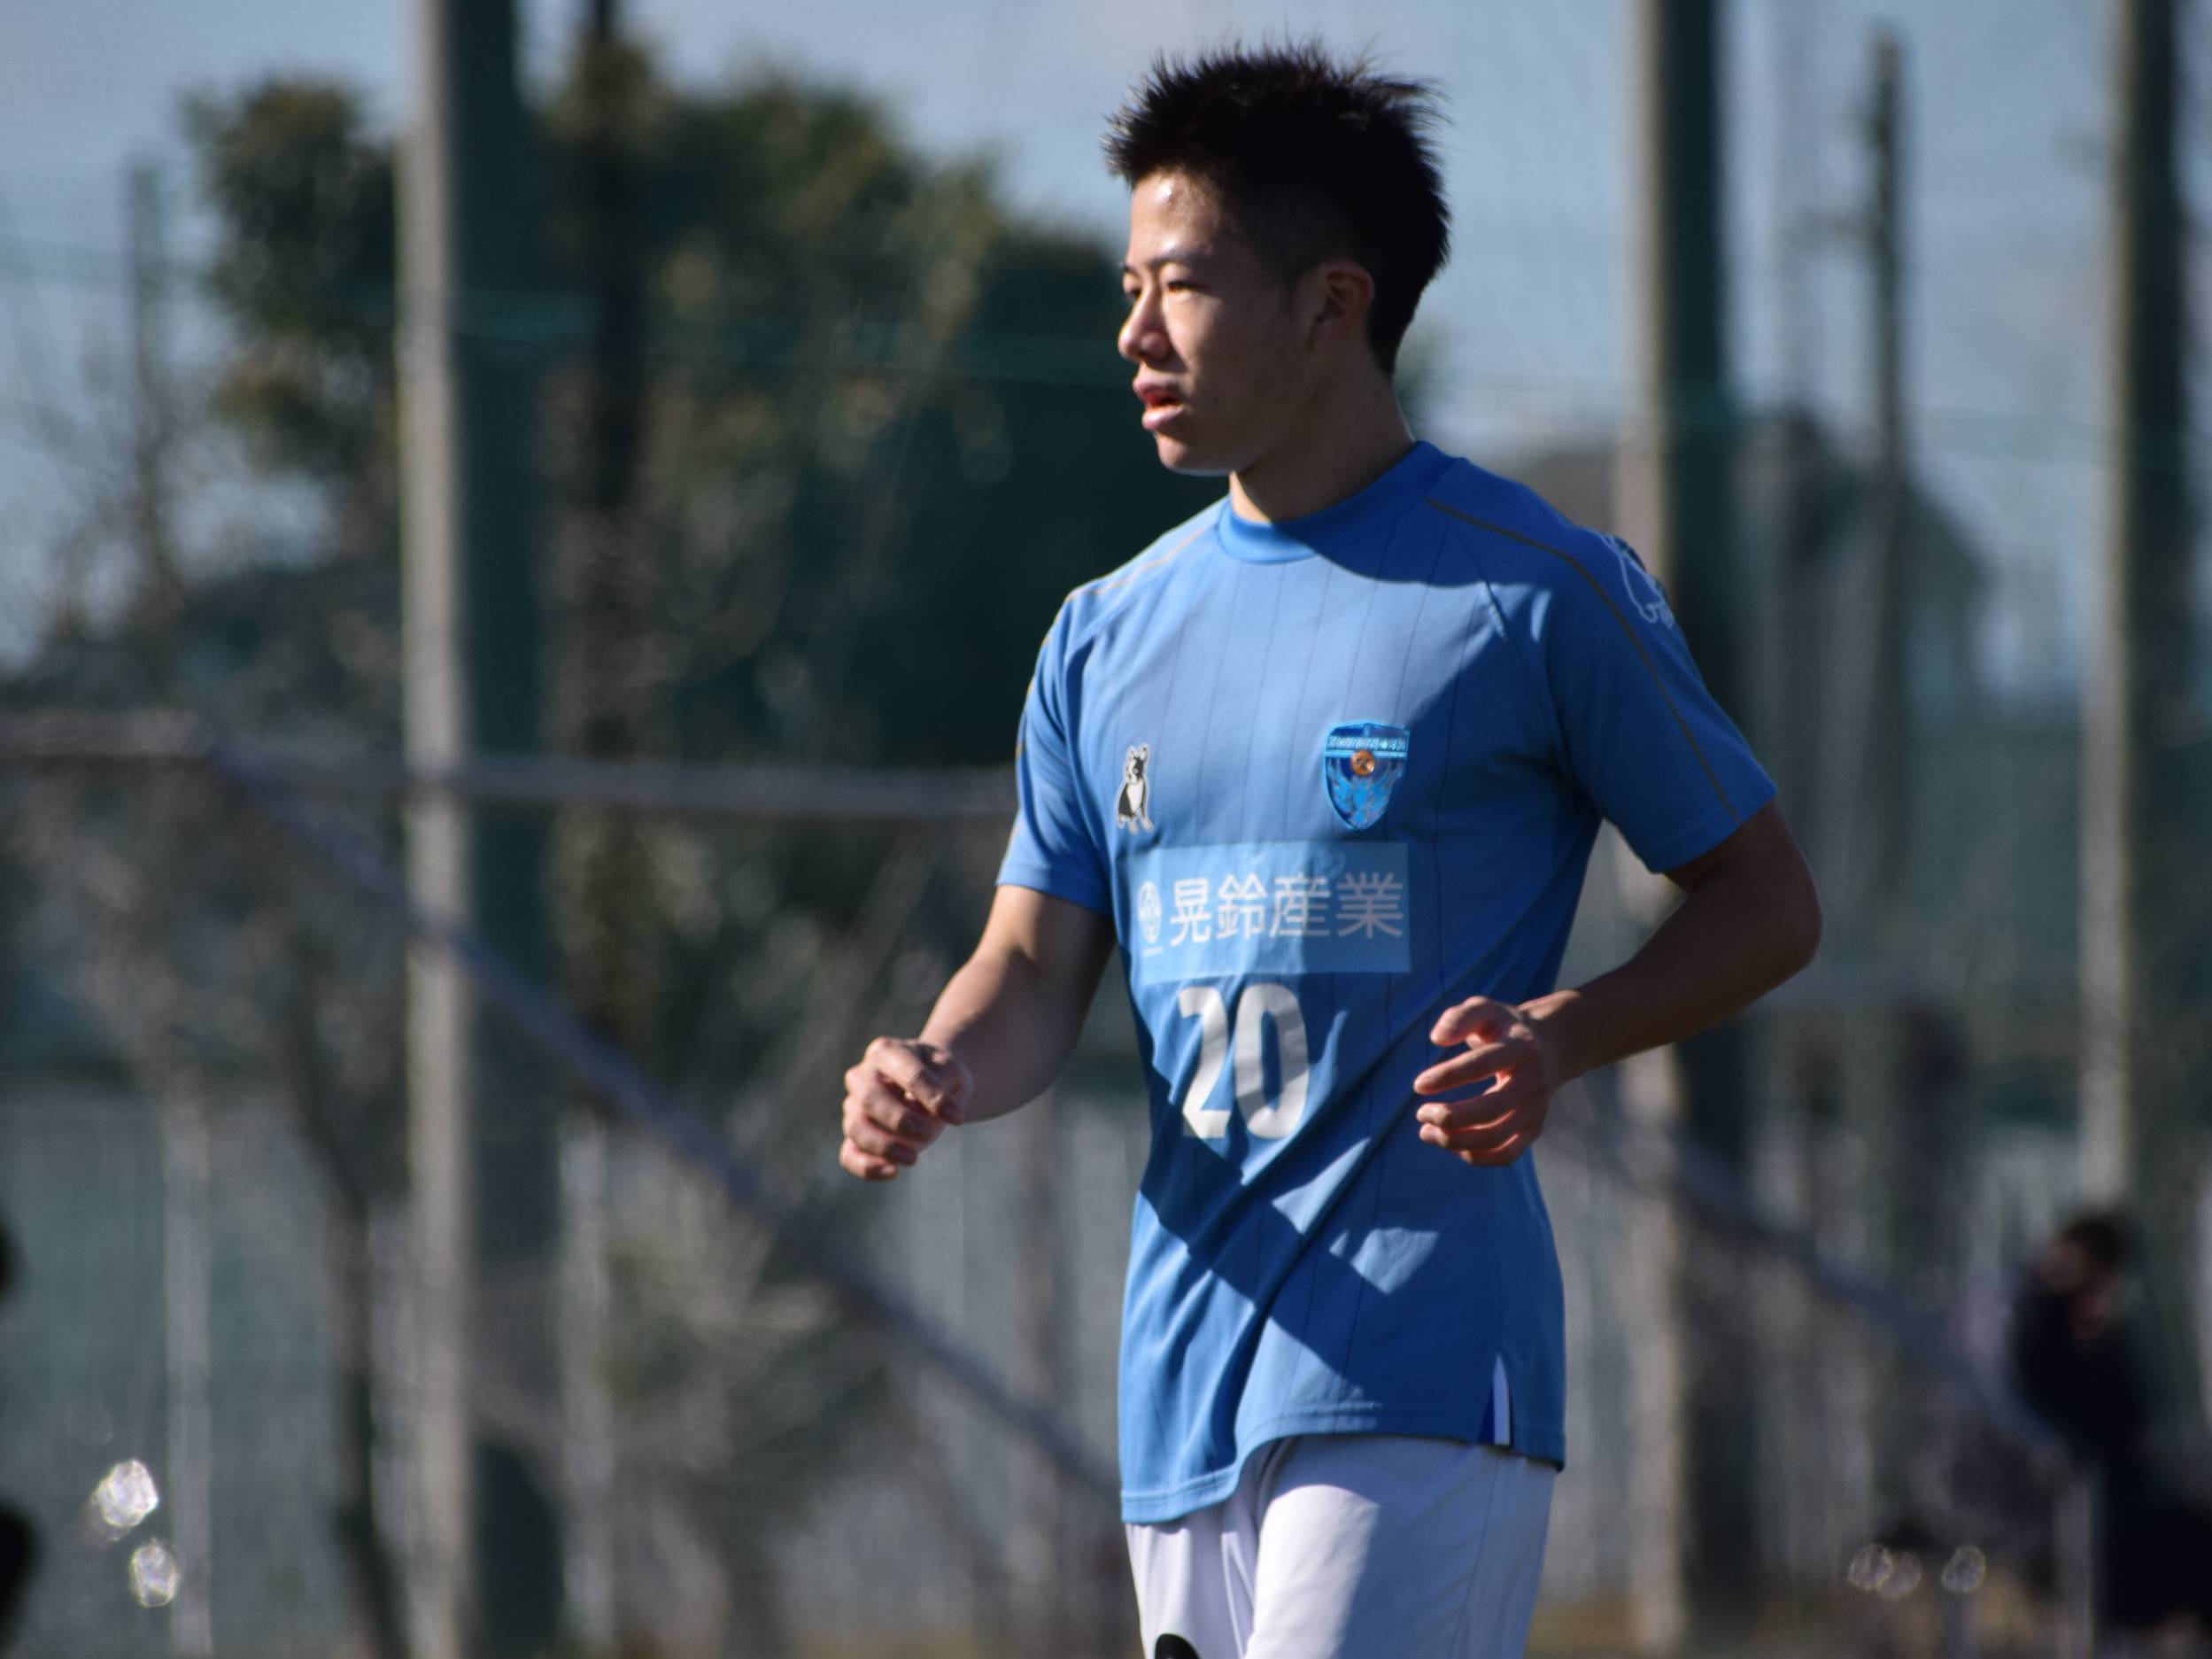 横浜FCユース MF永田滉太朗 「トップチームは一試合にかける想いがユースとは全然違う」 インタビュー 高校サッカードットコム